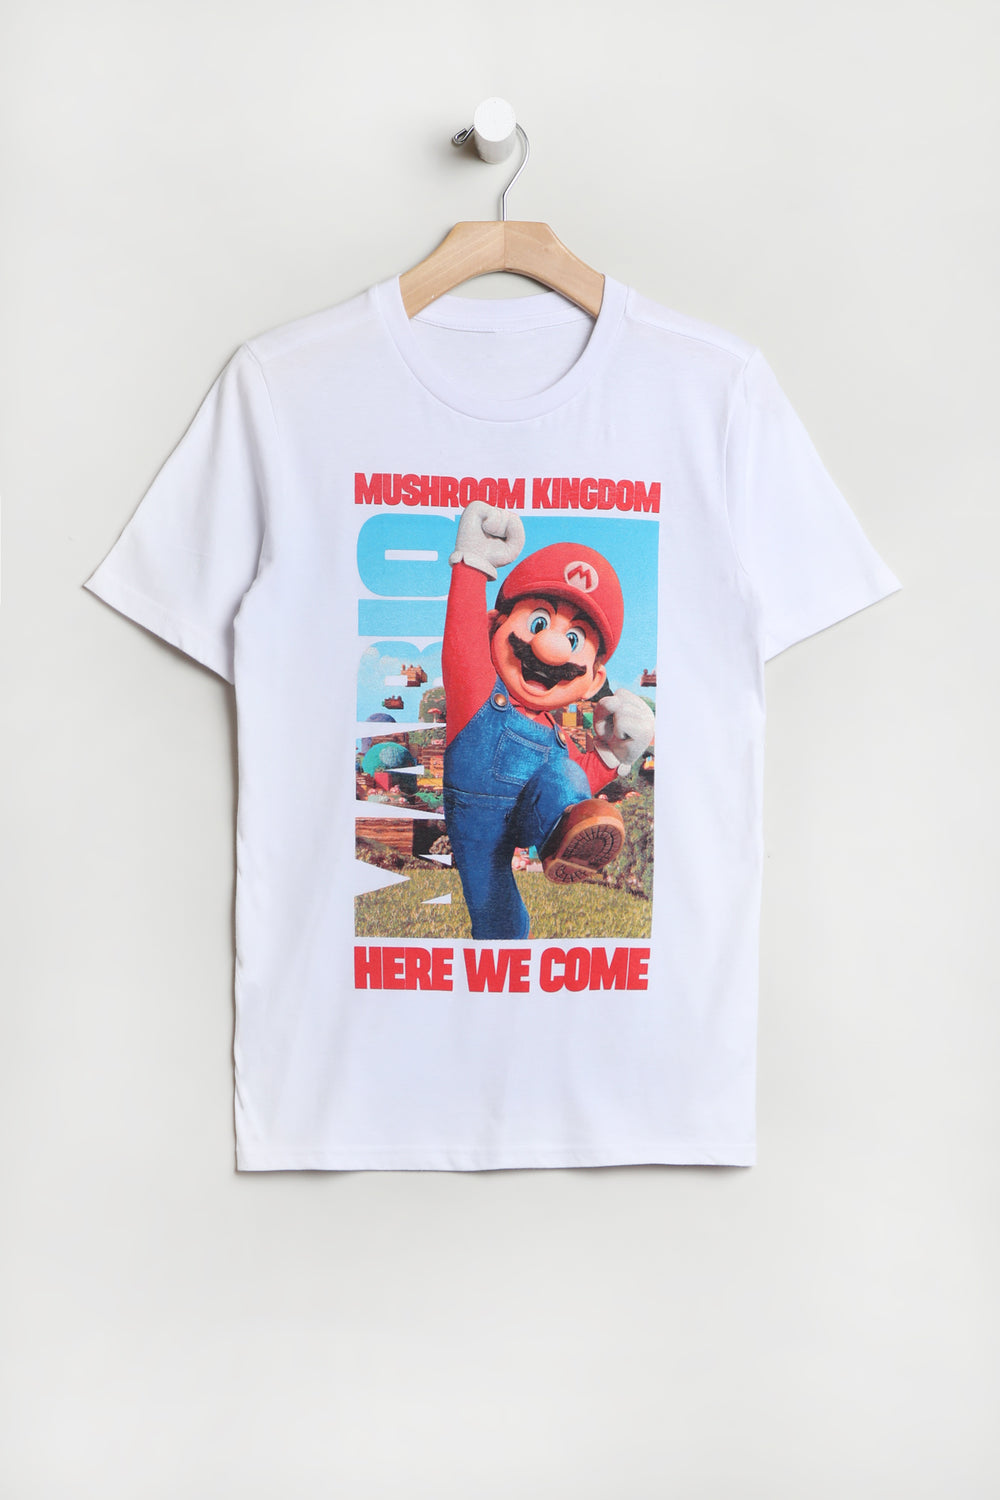 Youth Super Mario Bros. Mushroom Kingdom T-Shirt White